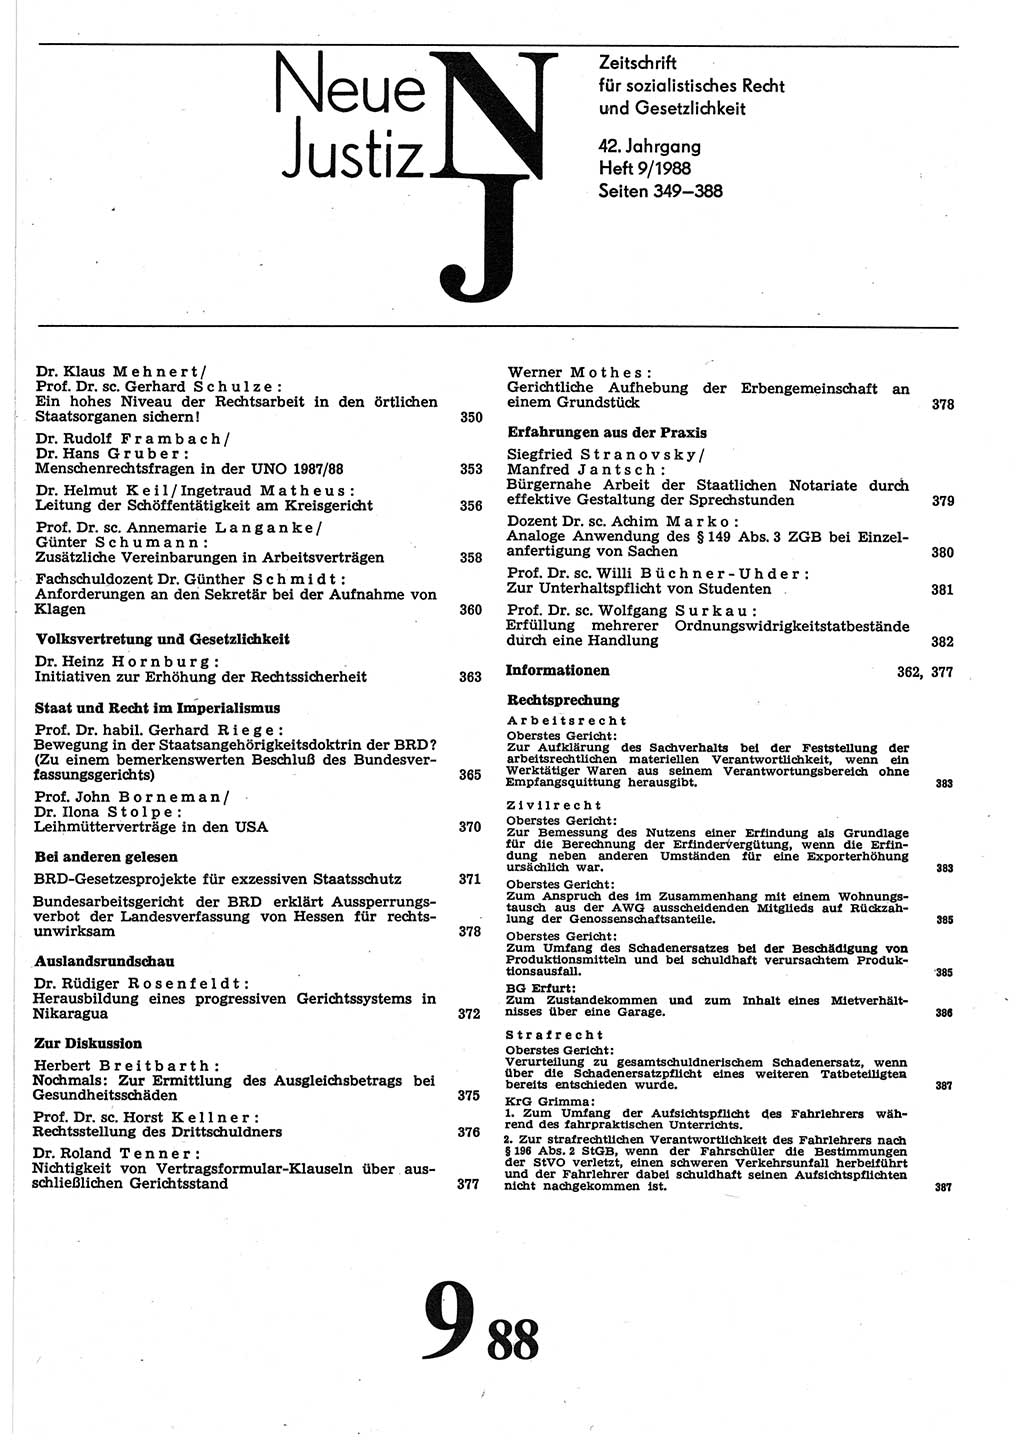 Neue Justiz (NJ), Zeitschrift für sozialistisches Recht und Gesetzlichkeit [Deutsche Demokratische Republik (DDR)], 42. Jahrgang 1988, Seite 349 (NJ DDR 1988, S. 349)